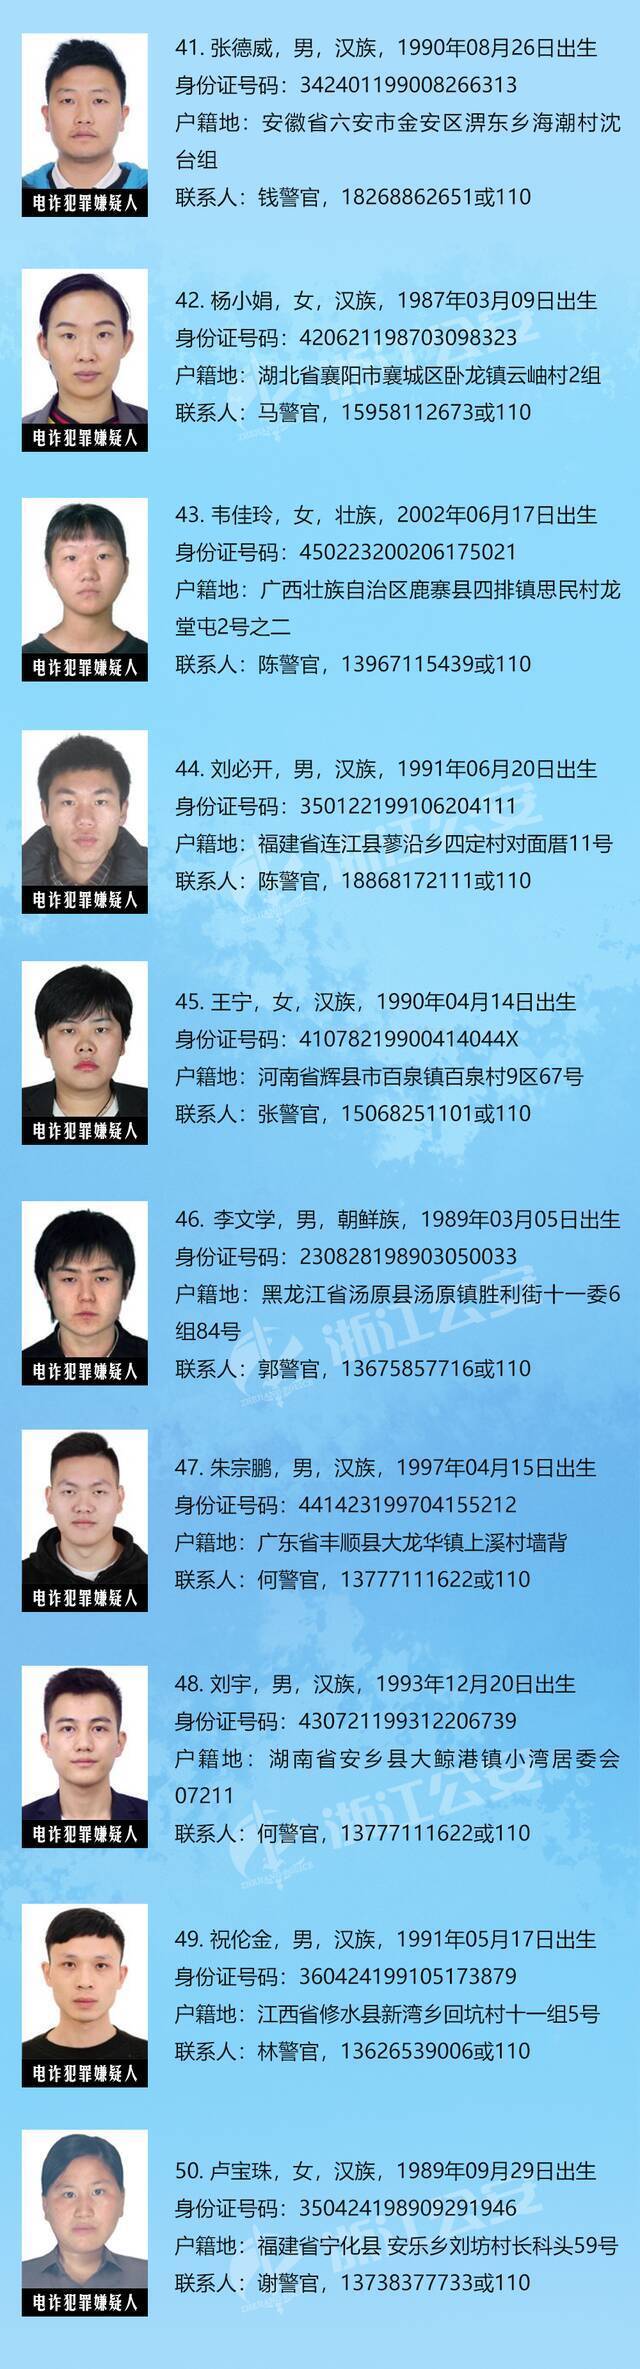 浙江省公安厅公开通缉50名在逃人员